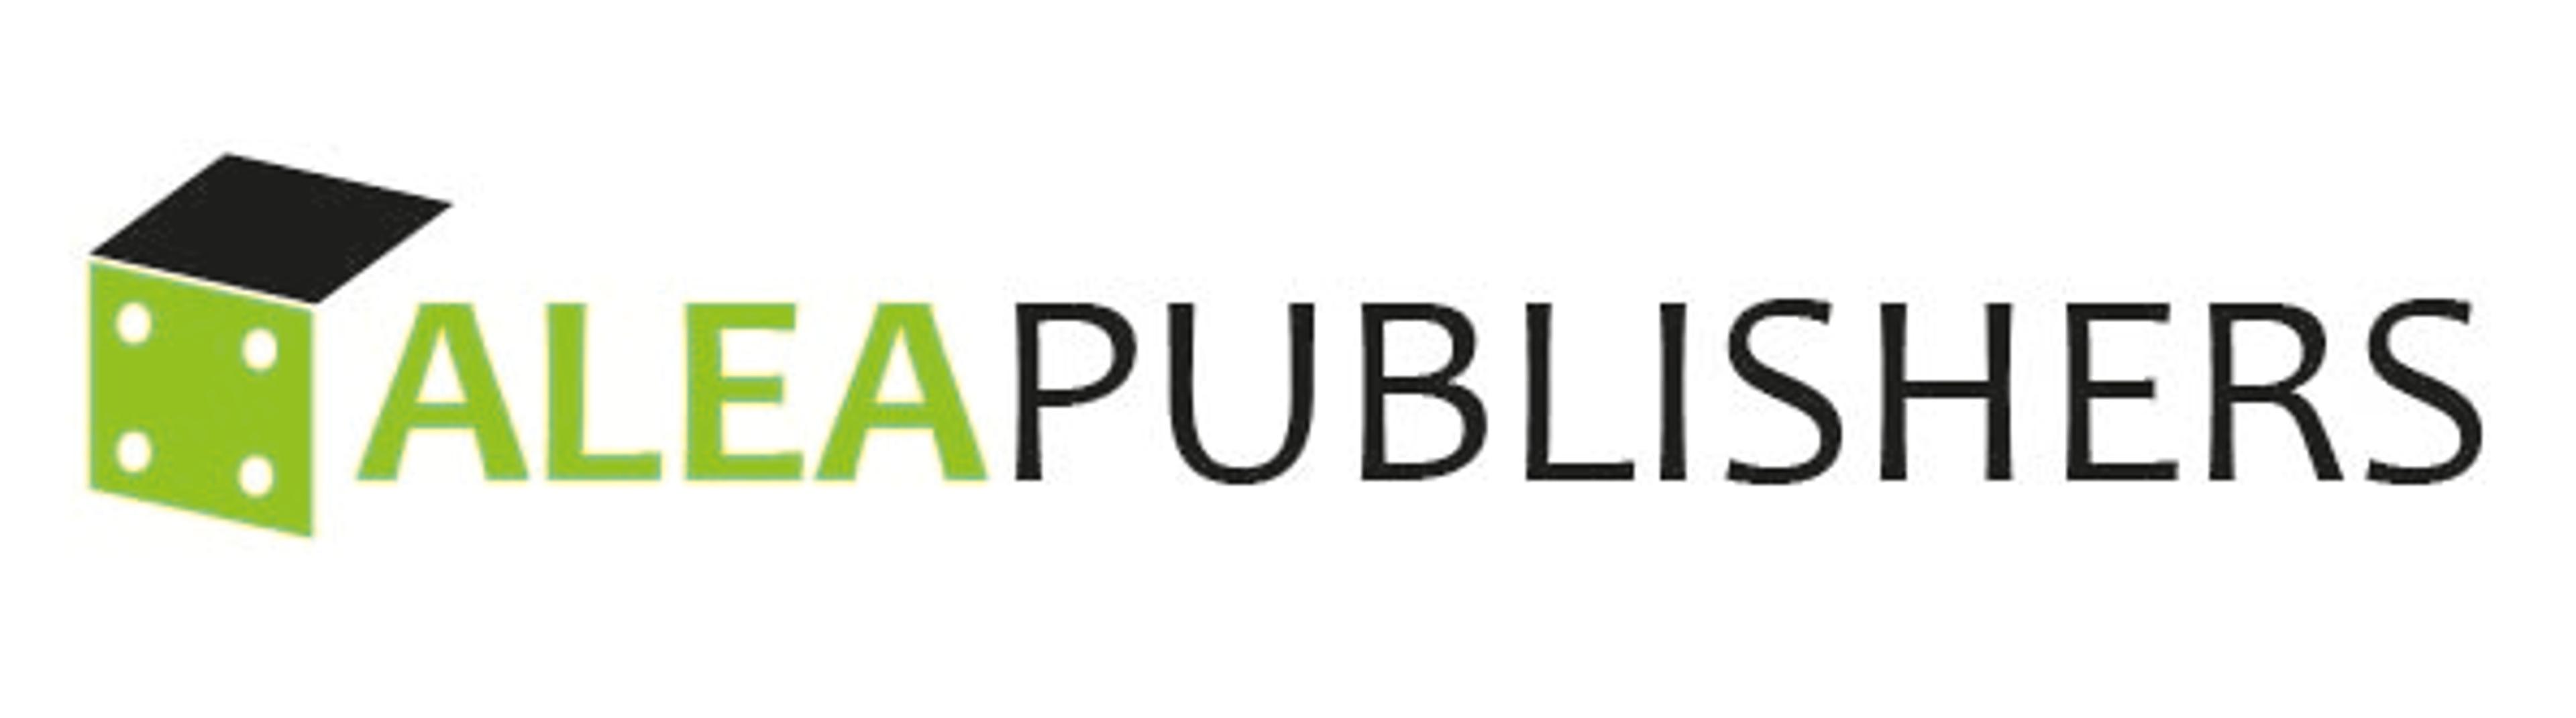 Alea Publishers B.V. neemt zes titels over van Vakbladen.com